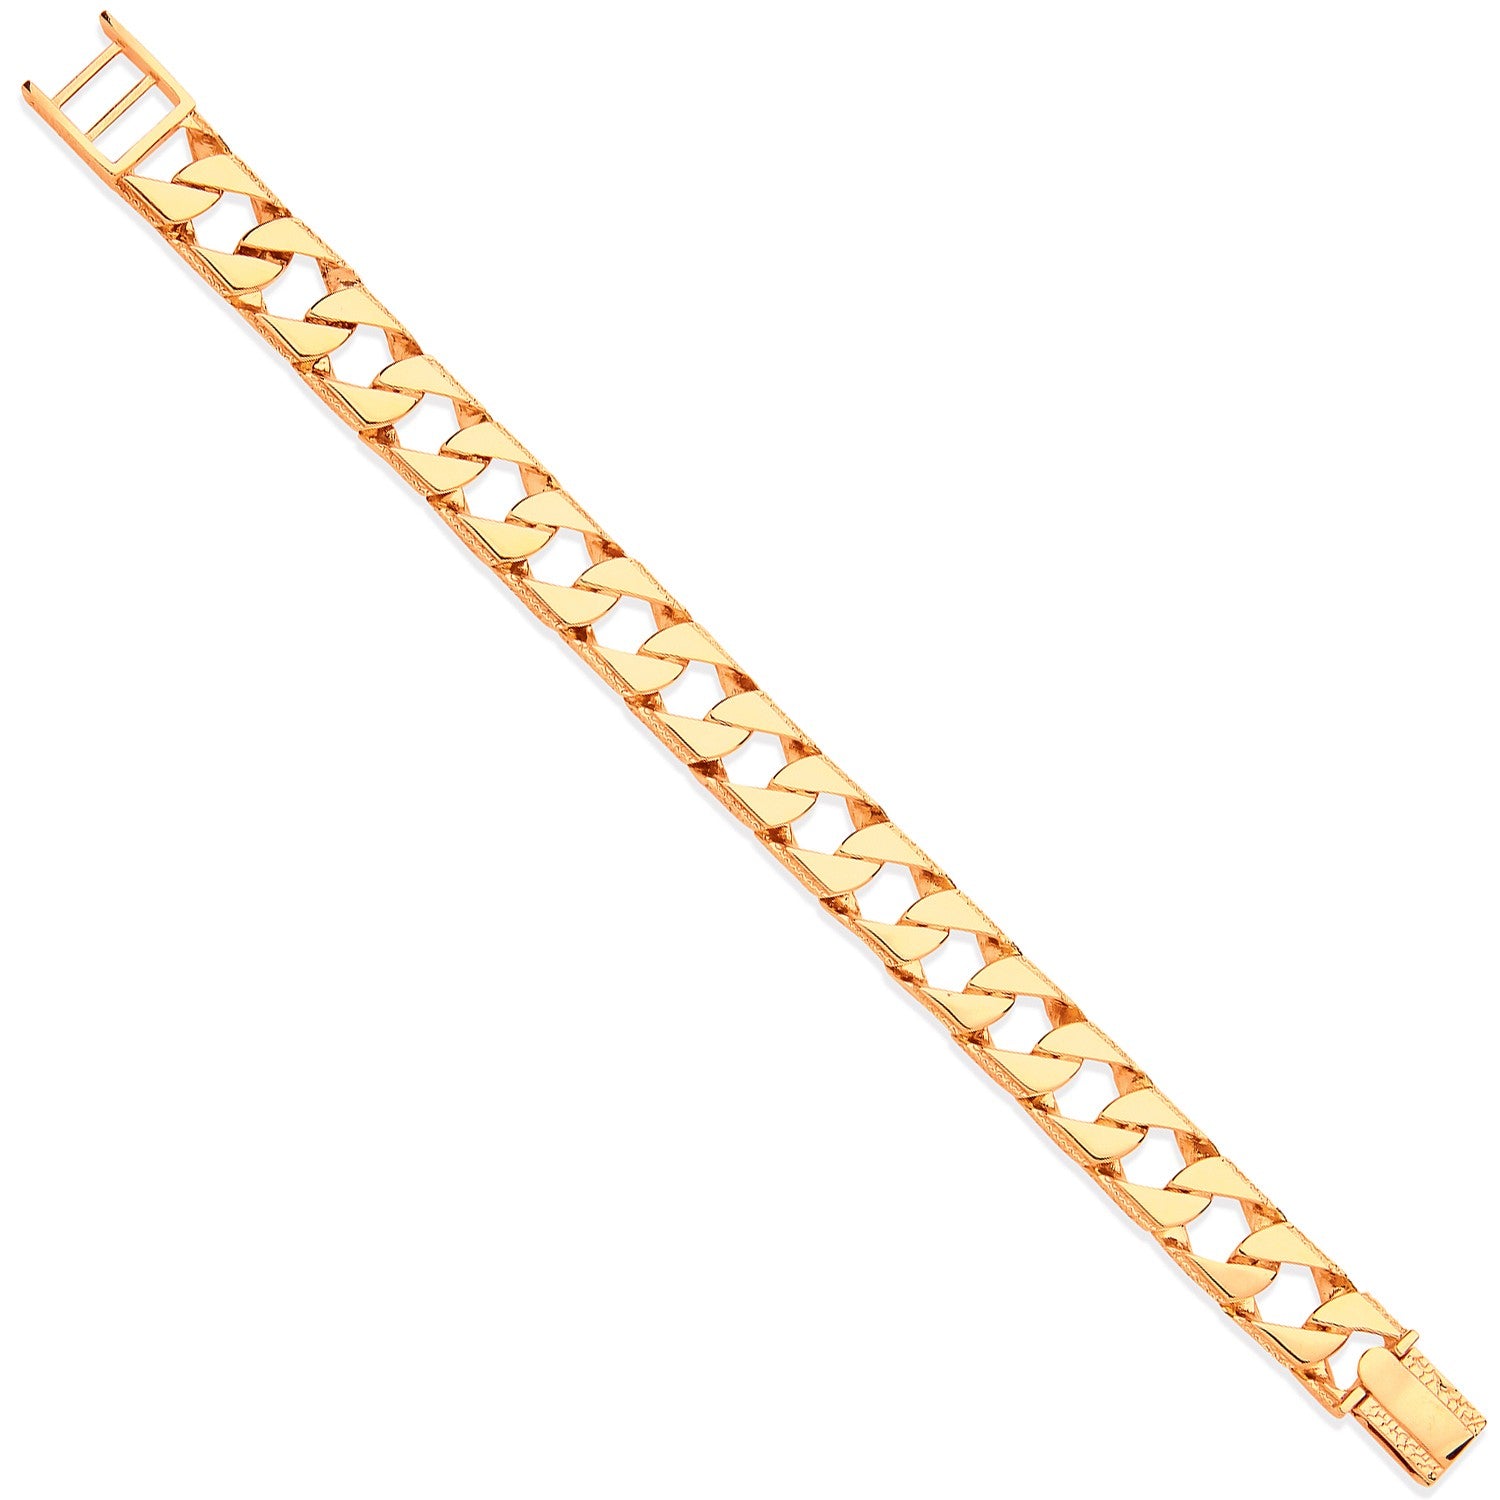 Buy quality Gents 22k Gold Lotuse Bracelet in Rajkot